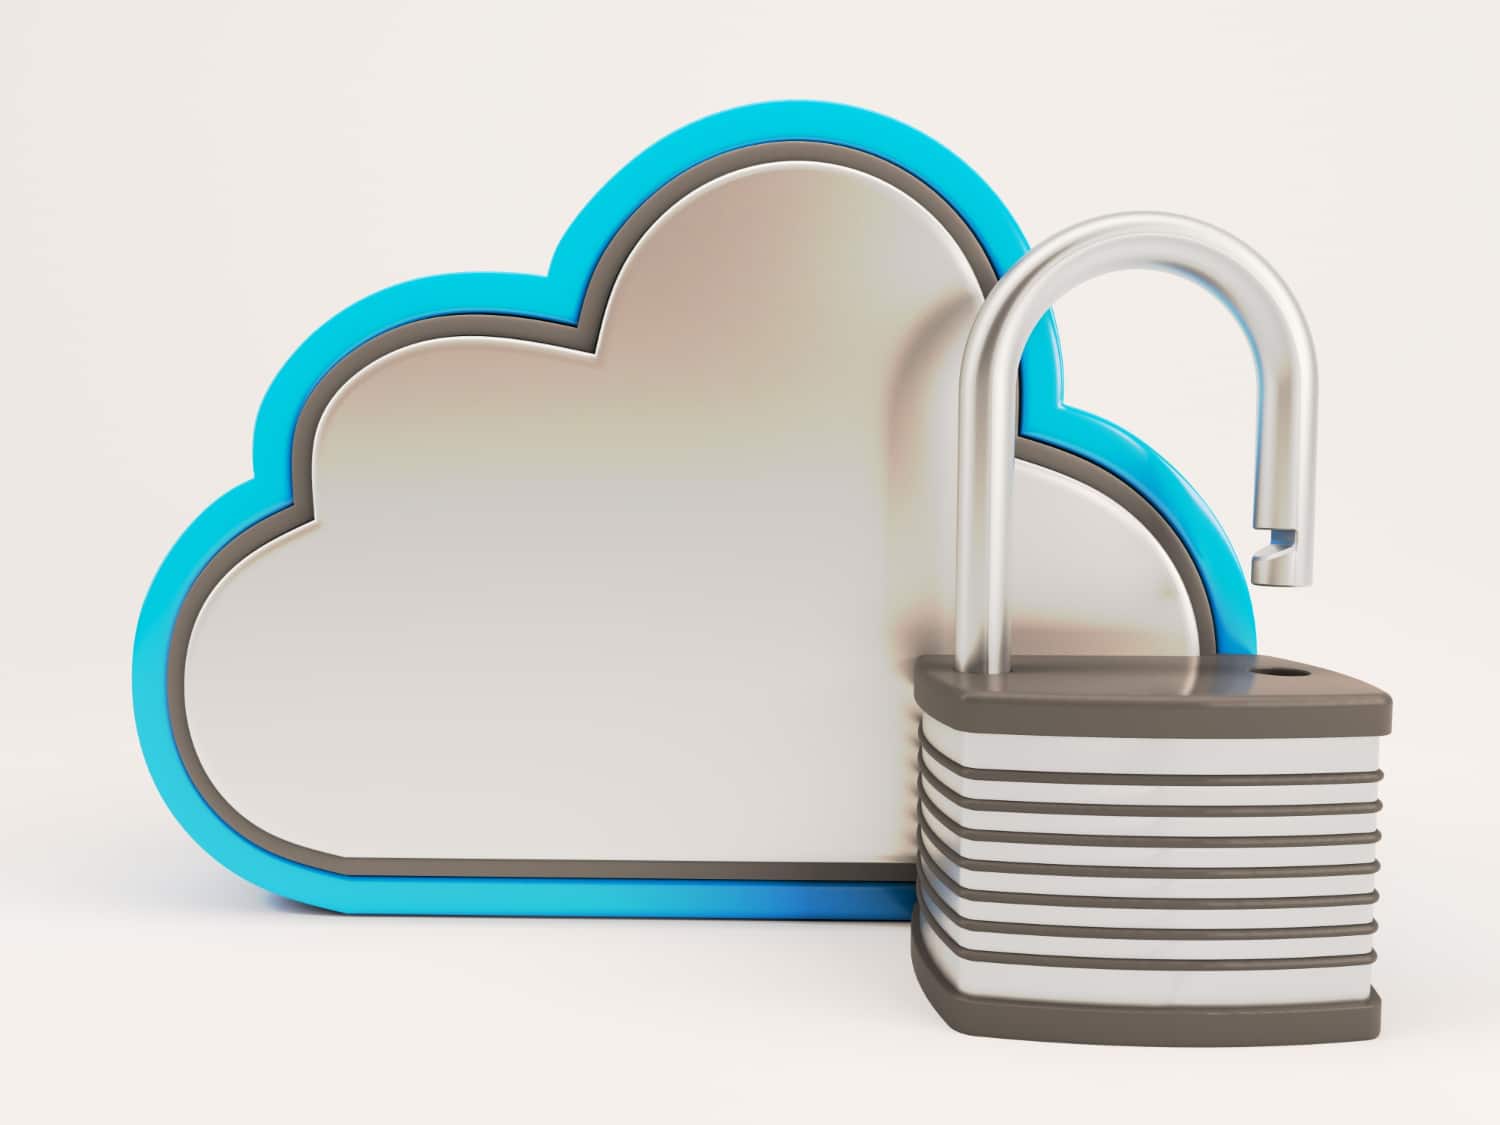 SSL in the Cloud